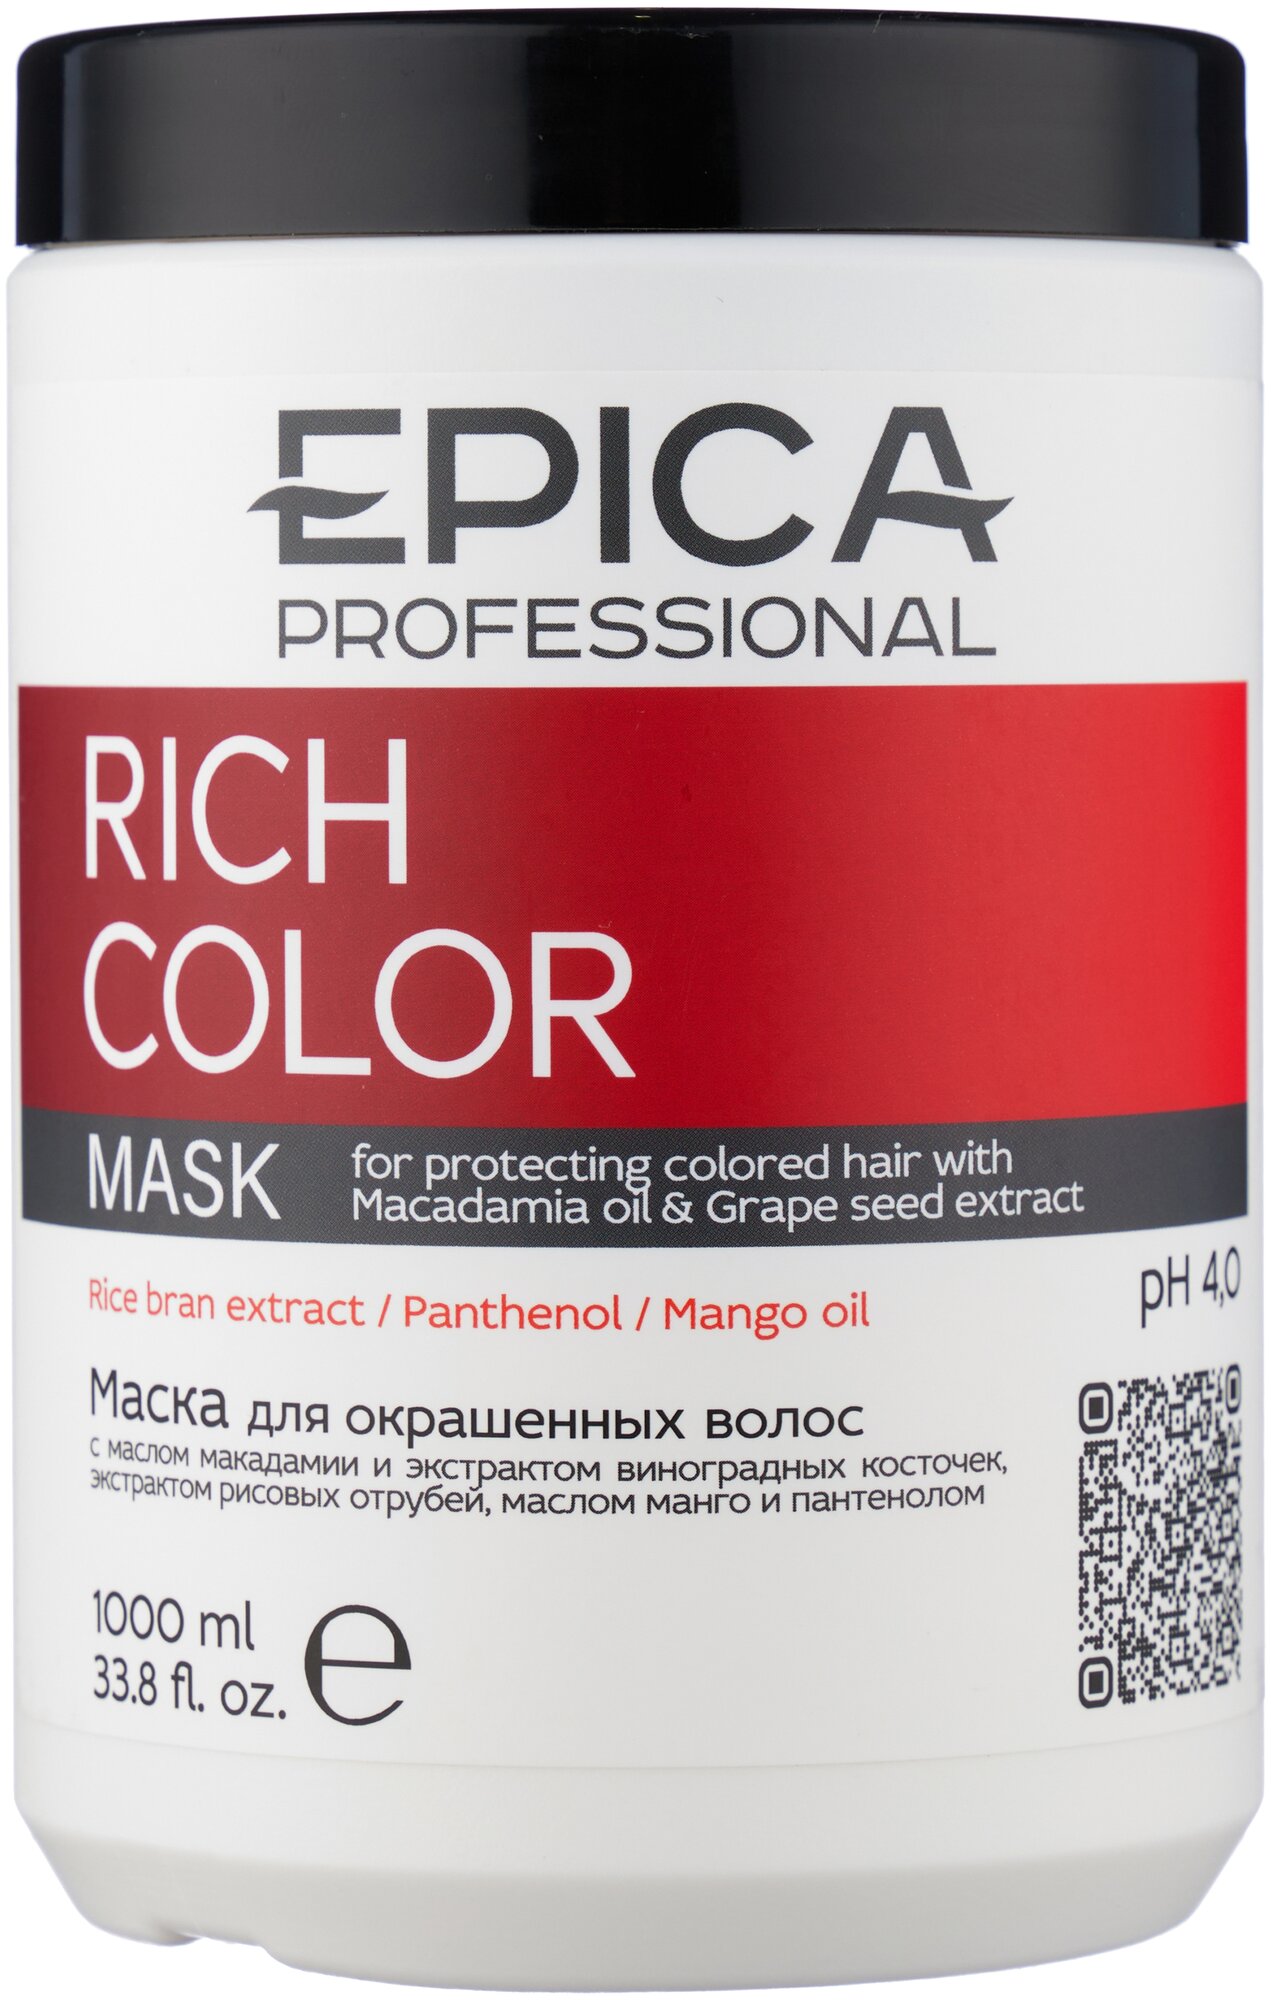 EPICA PROFESSIONAL Rich Color Маска для окрашенных волос с маслом макадамии и экстракта виноградной косточки, 1000 мл